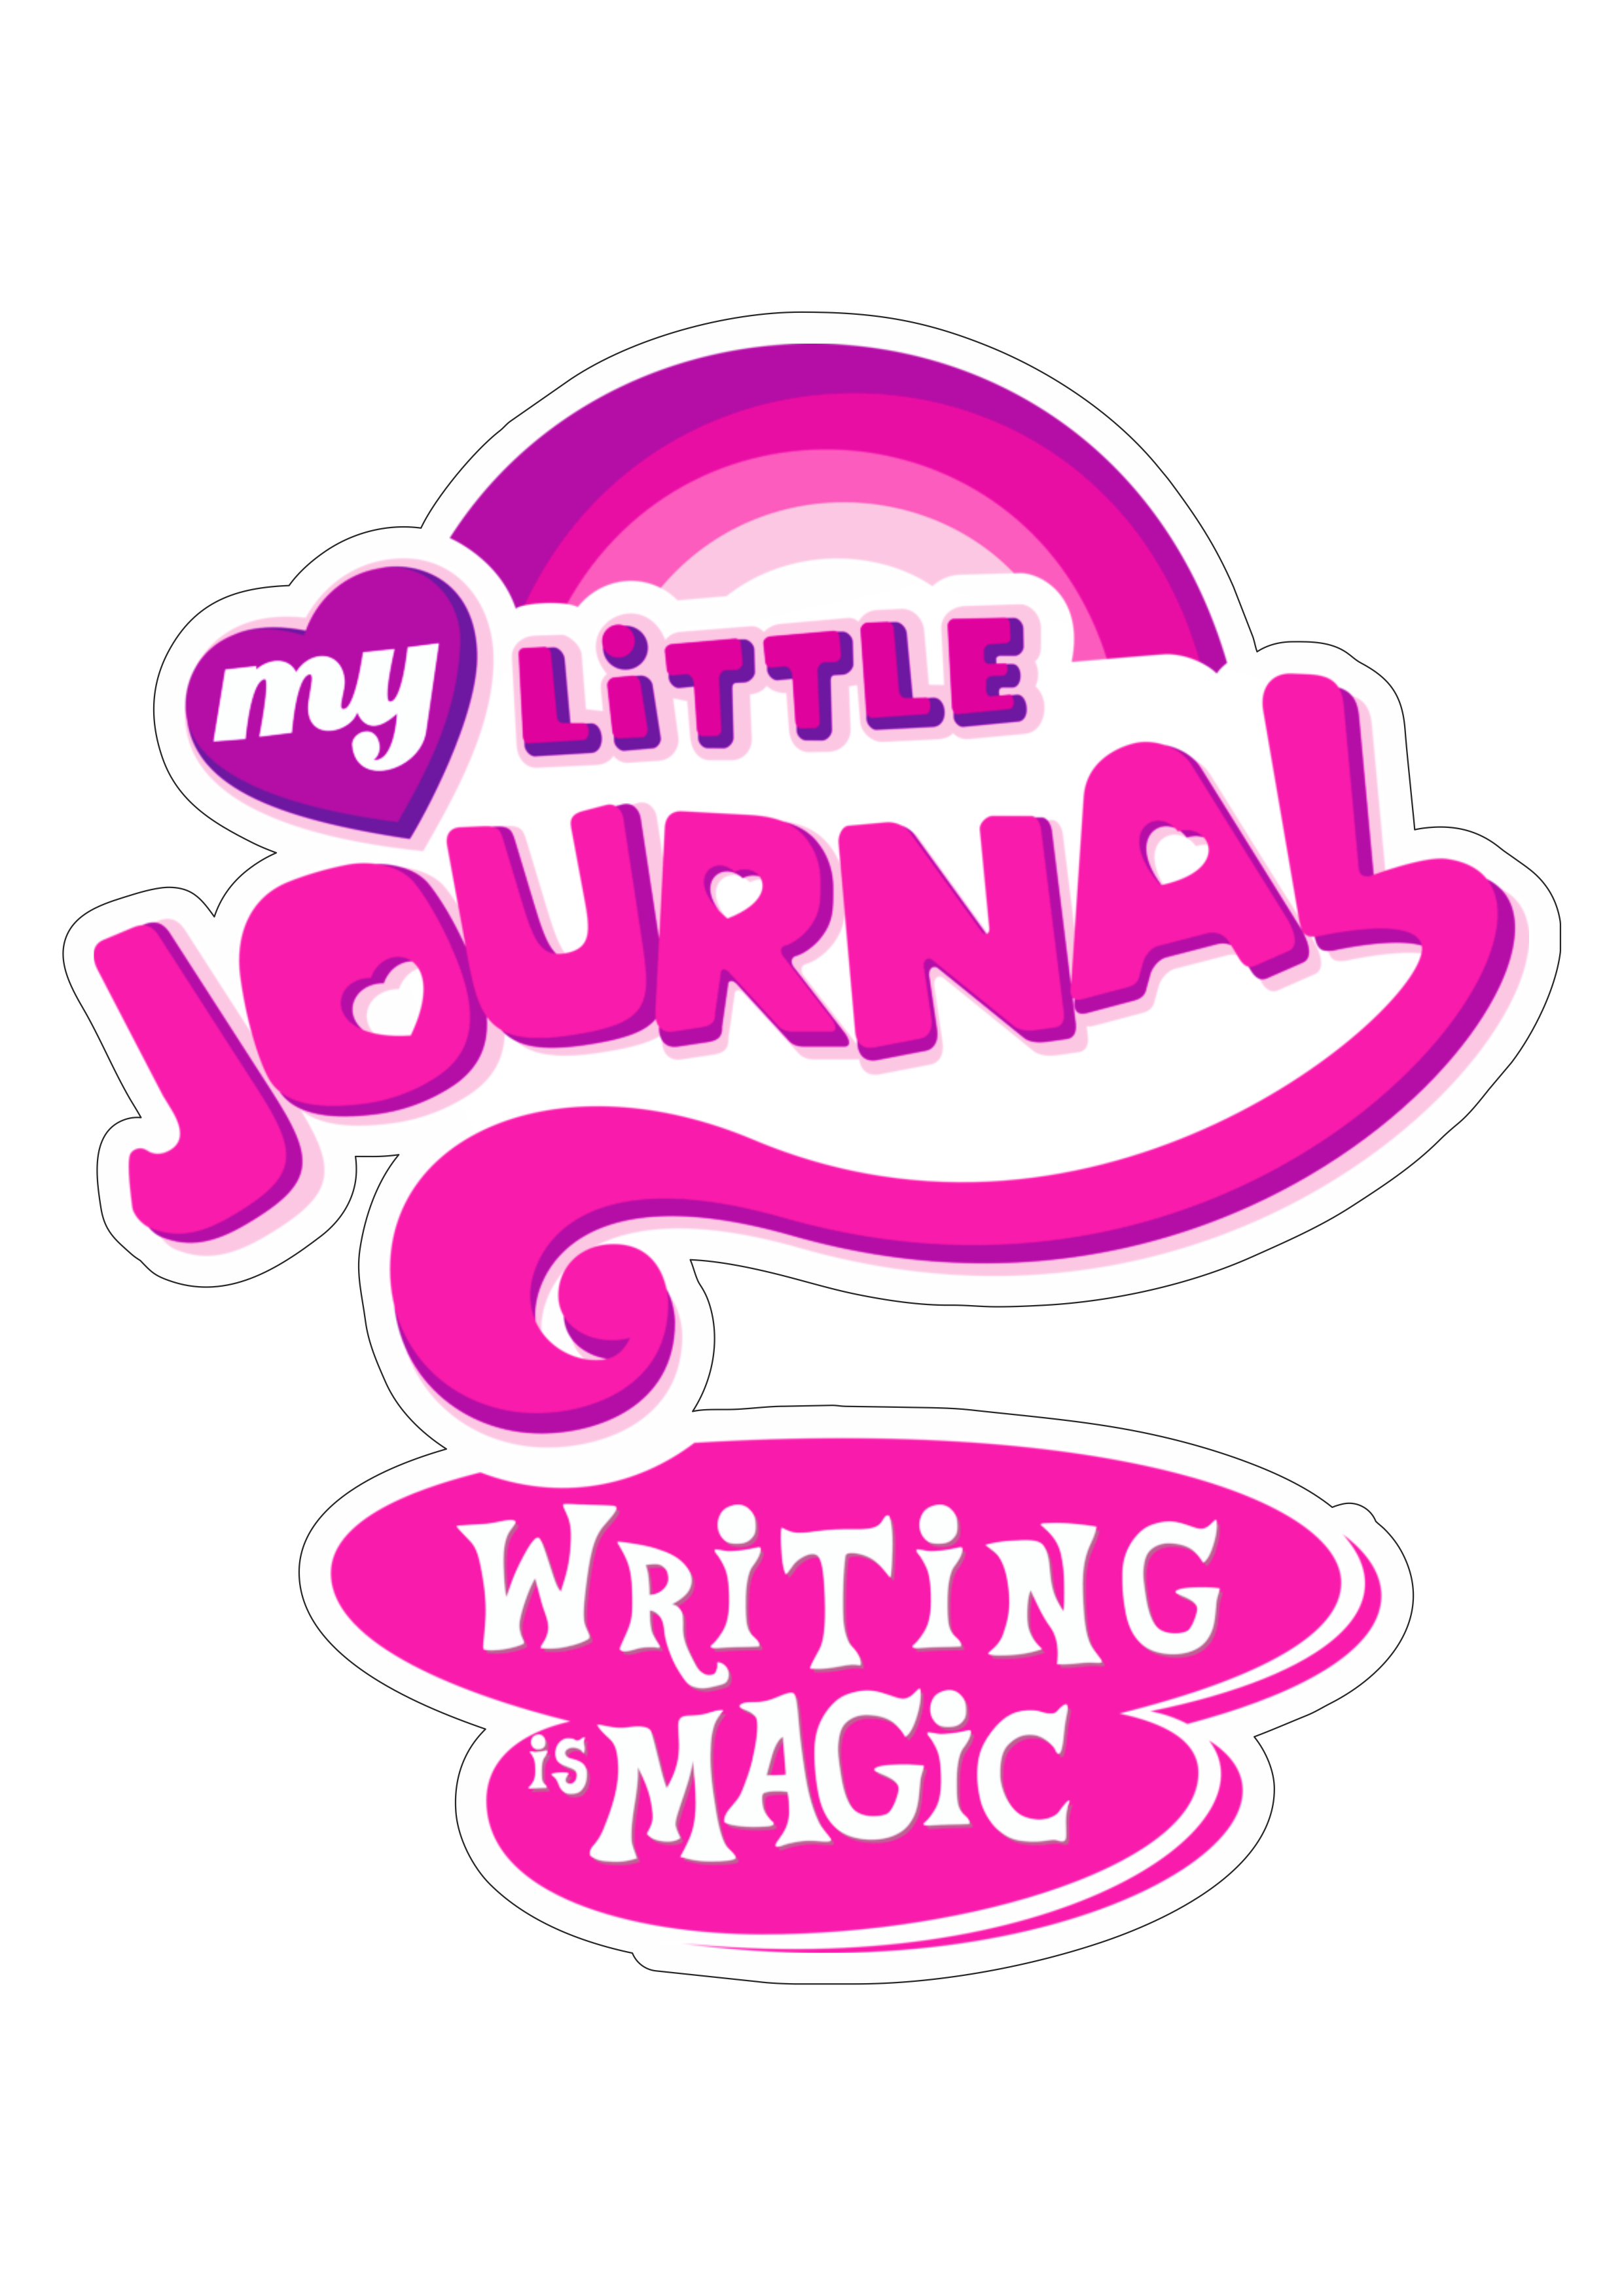 My little pony journal logo imagem vetor png